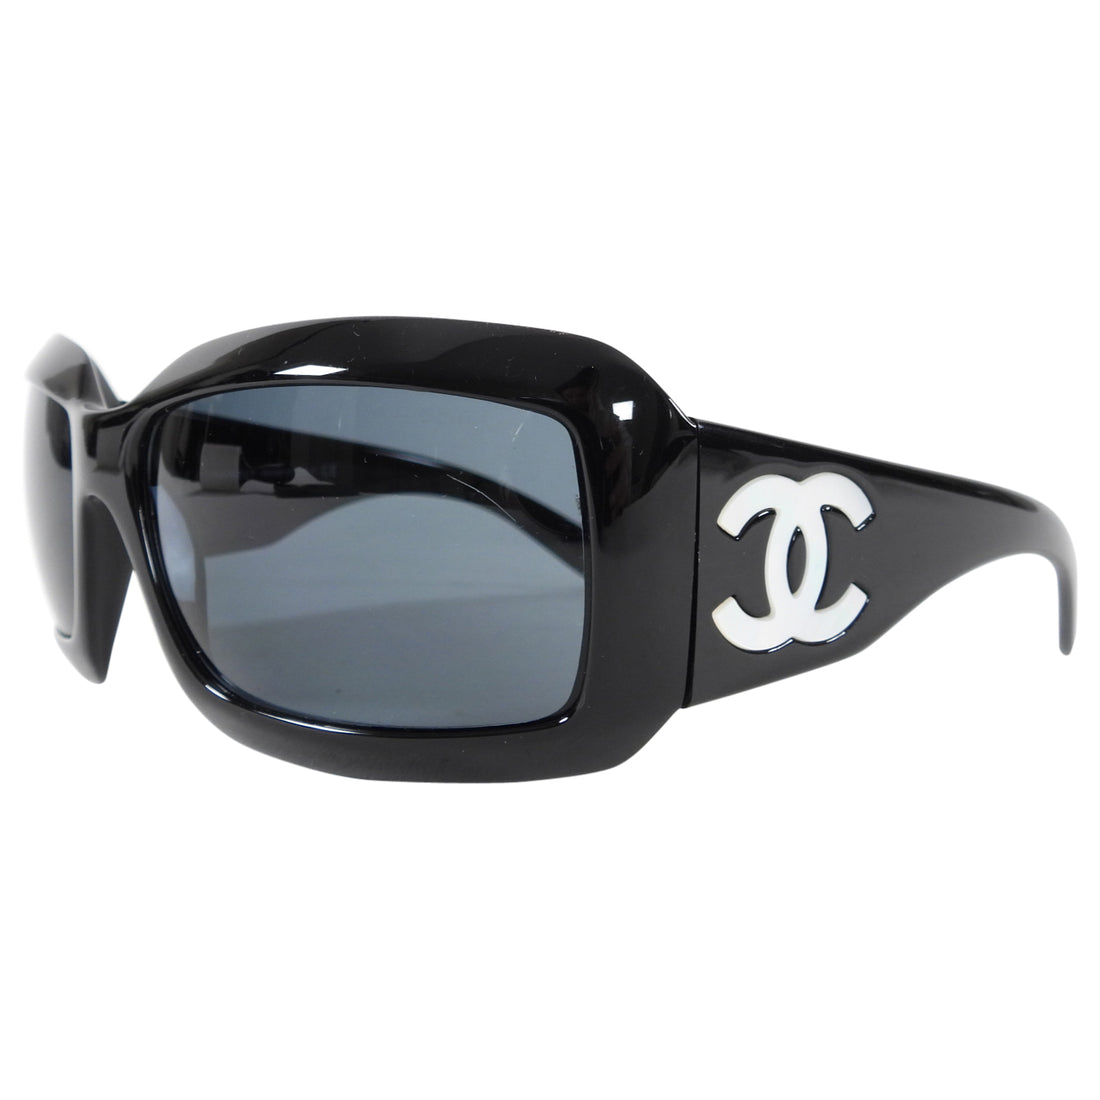 Burberry TB Monogram Acetate Square Sunglasses